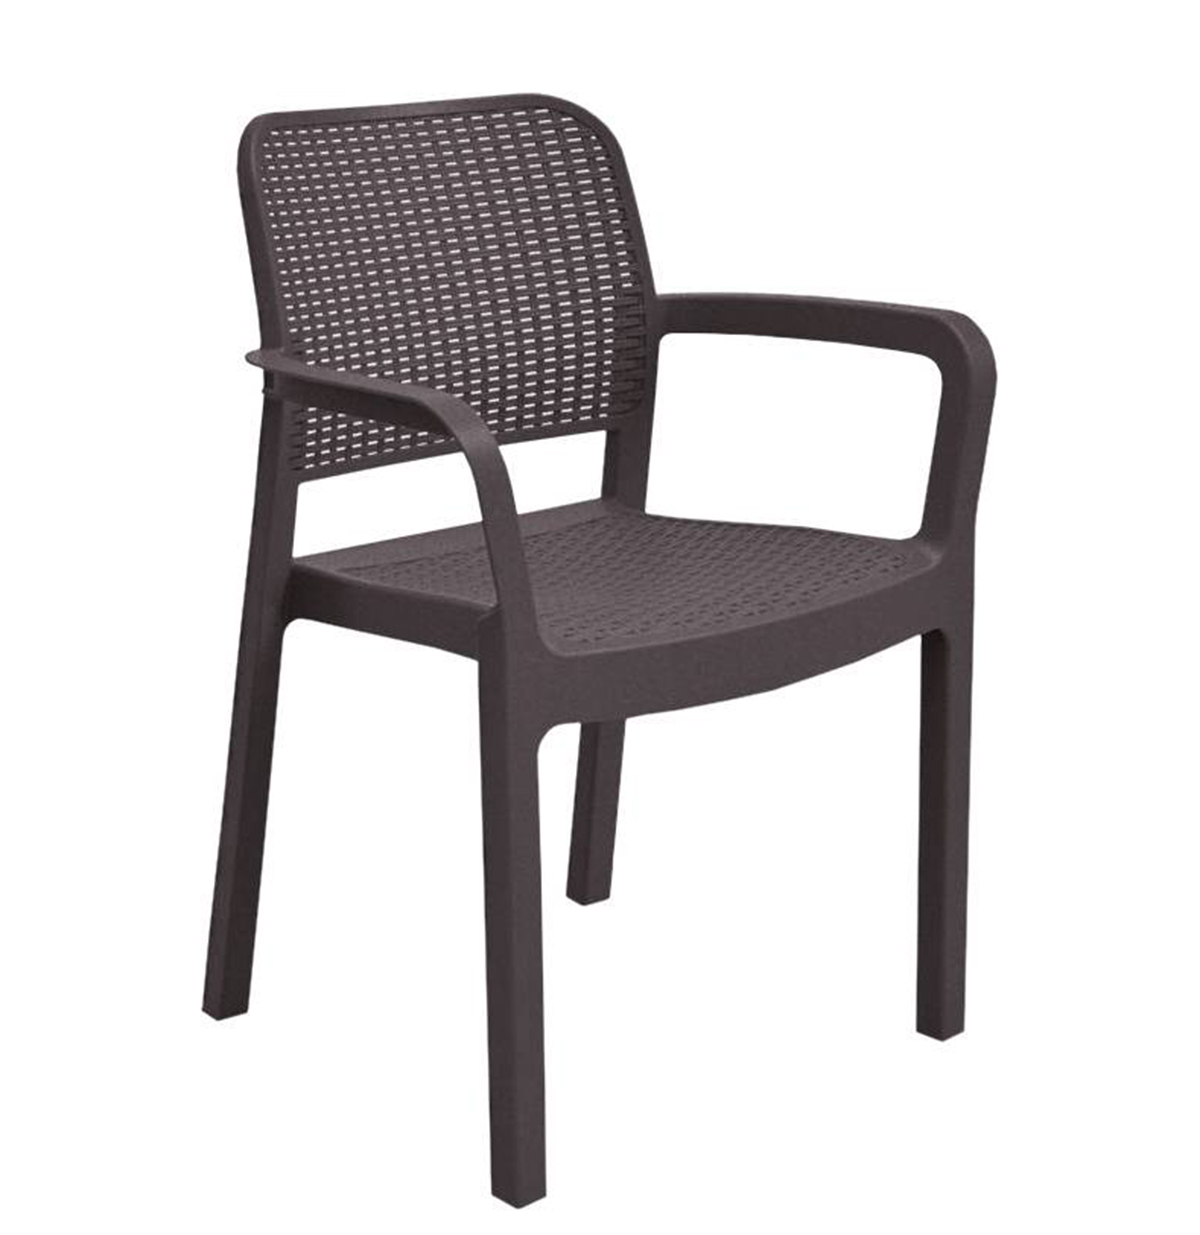 Стул Саманна коричневый стул tc chilly max 45x59x88 см коричневый